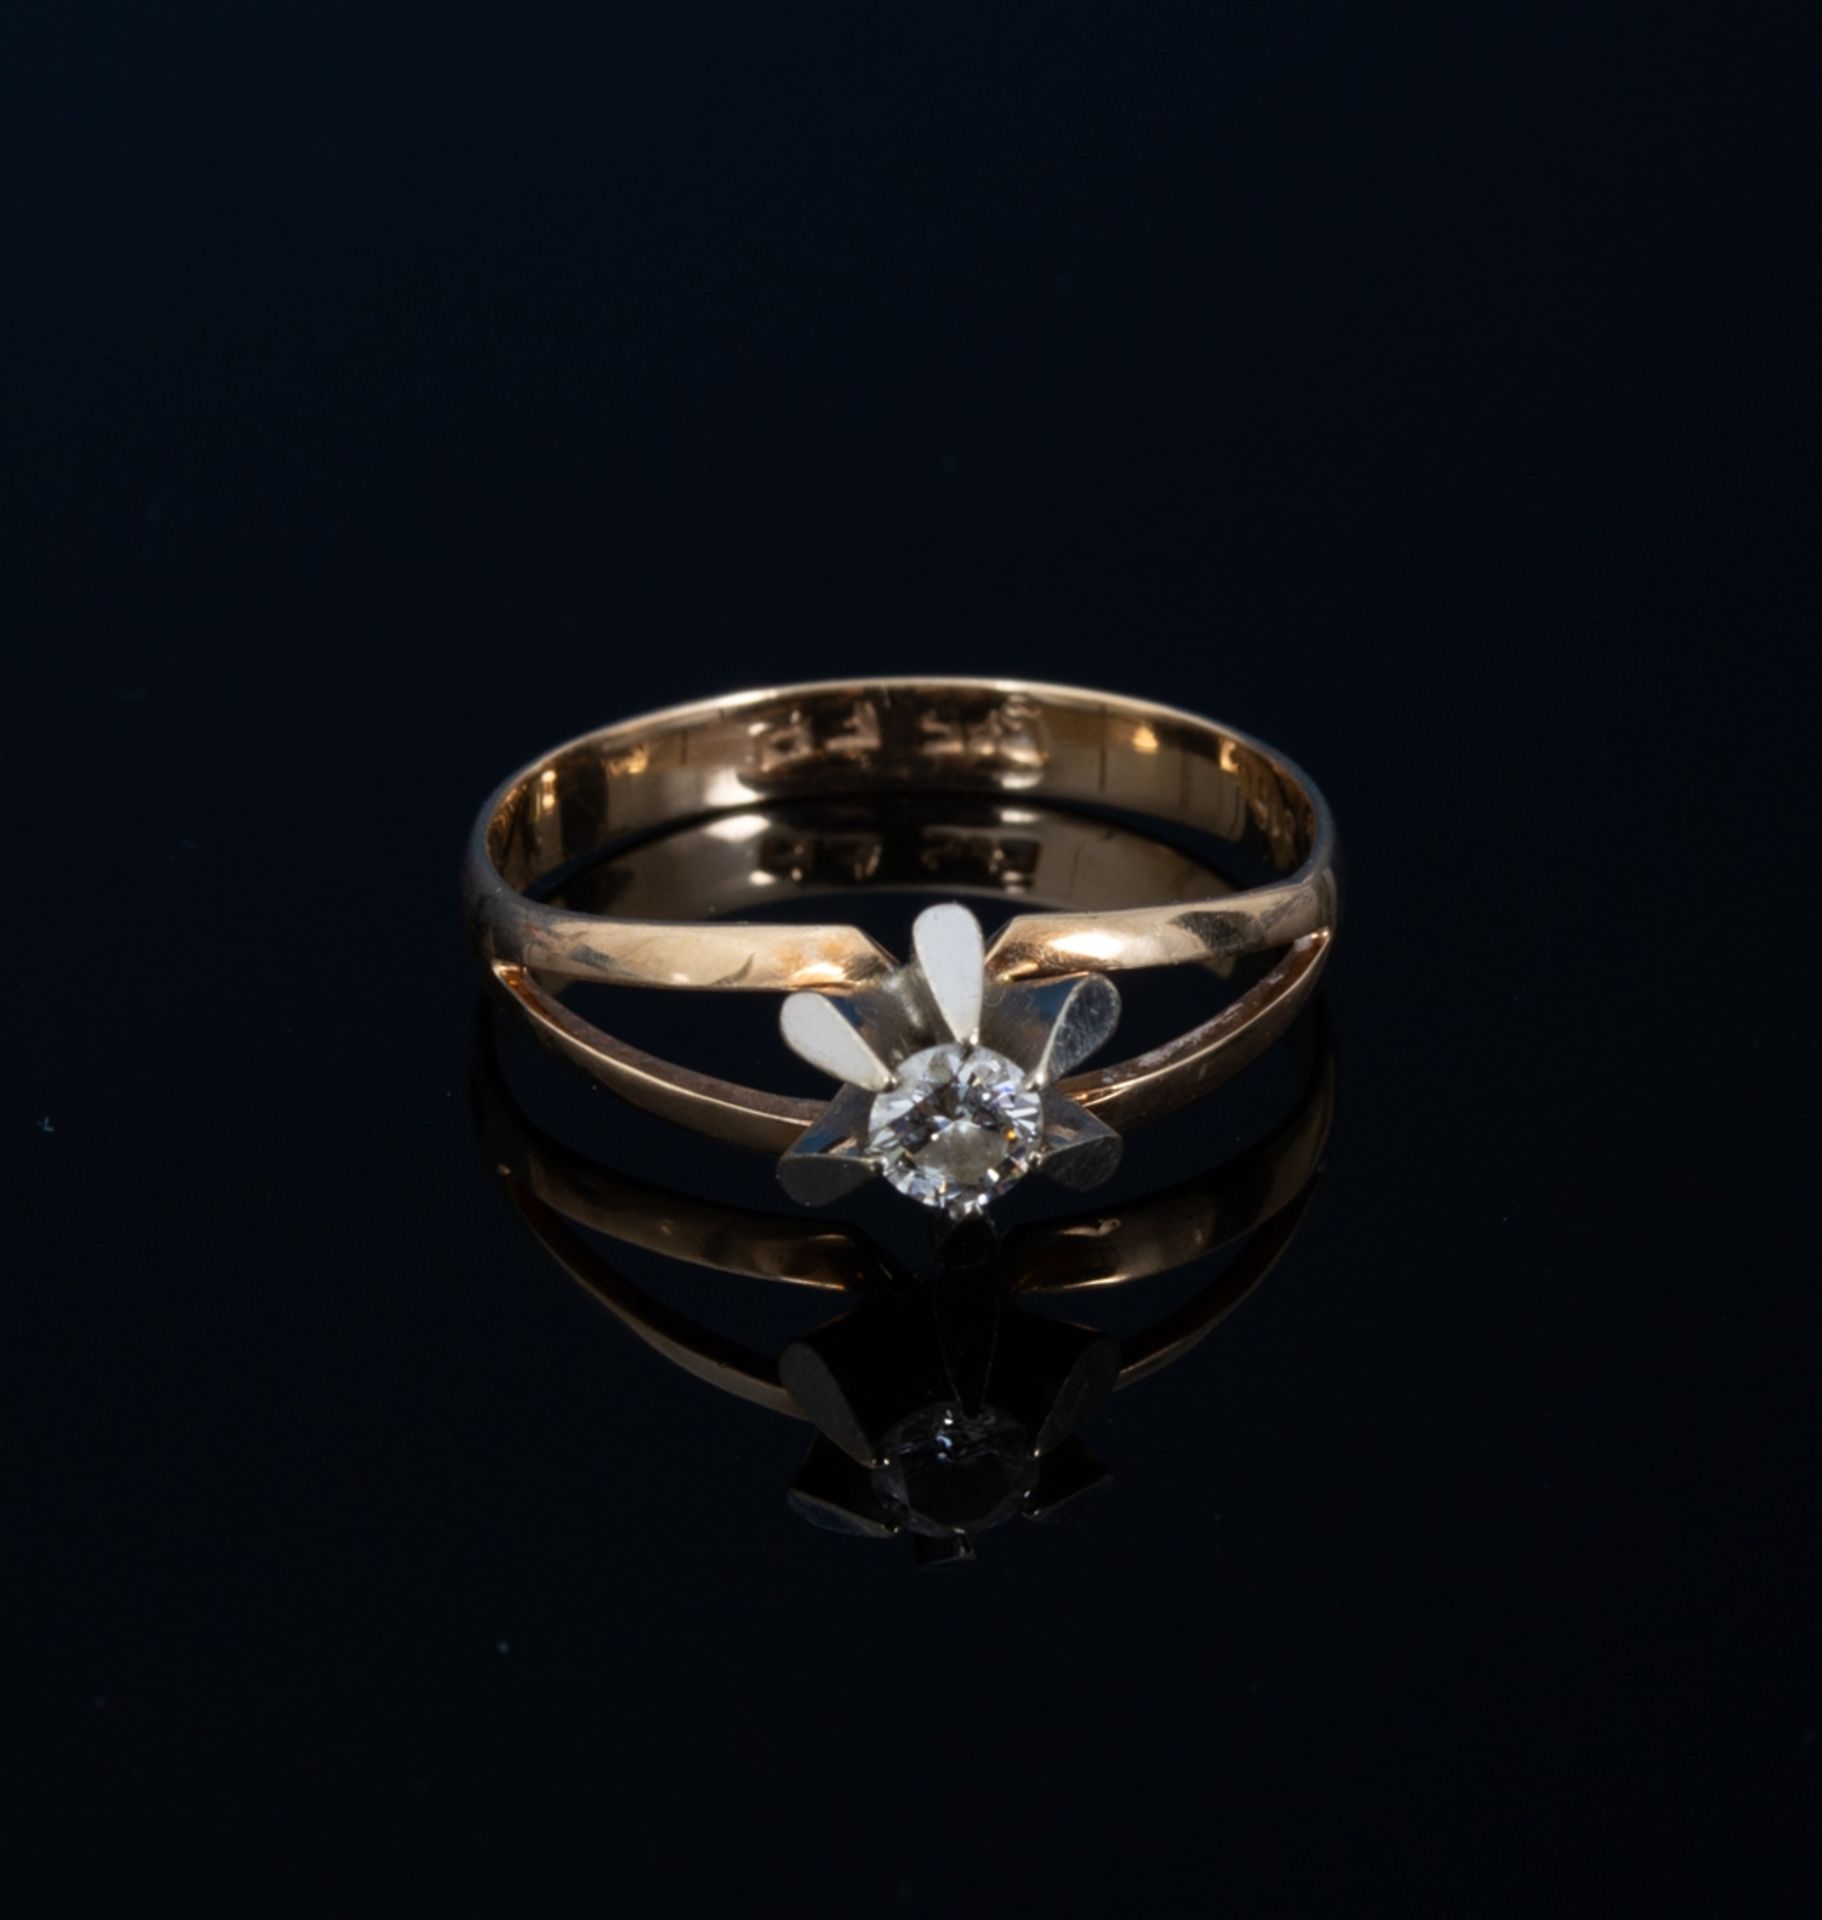 Diamantring. 585er Rosegold mit Diamant in weiß von ca. 0,16 ct (lt. Ringschiene). - Bild 2 aus 4